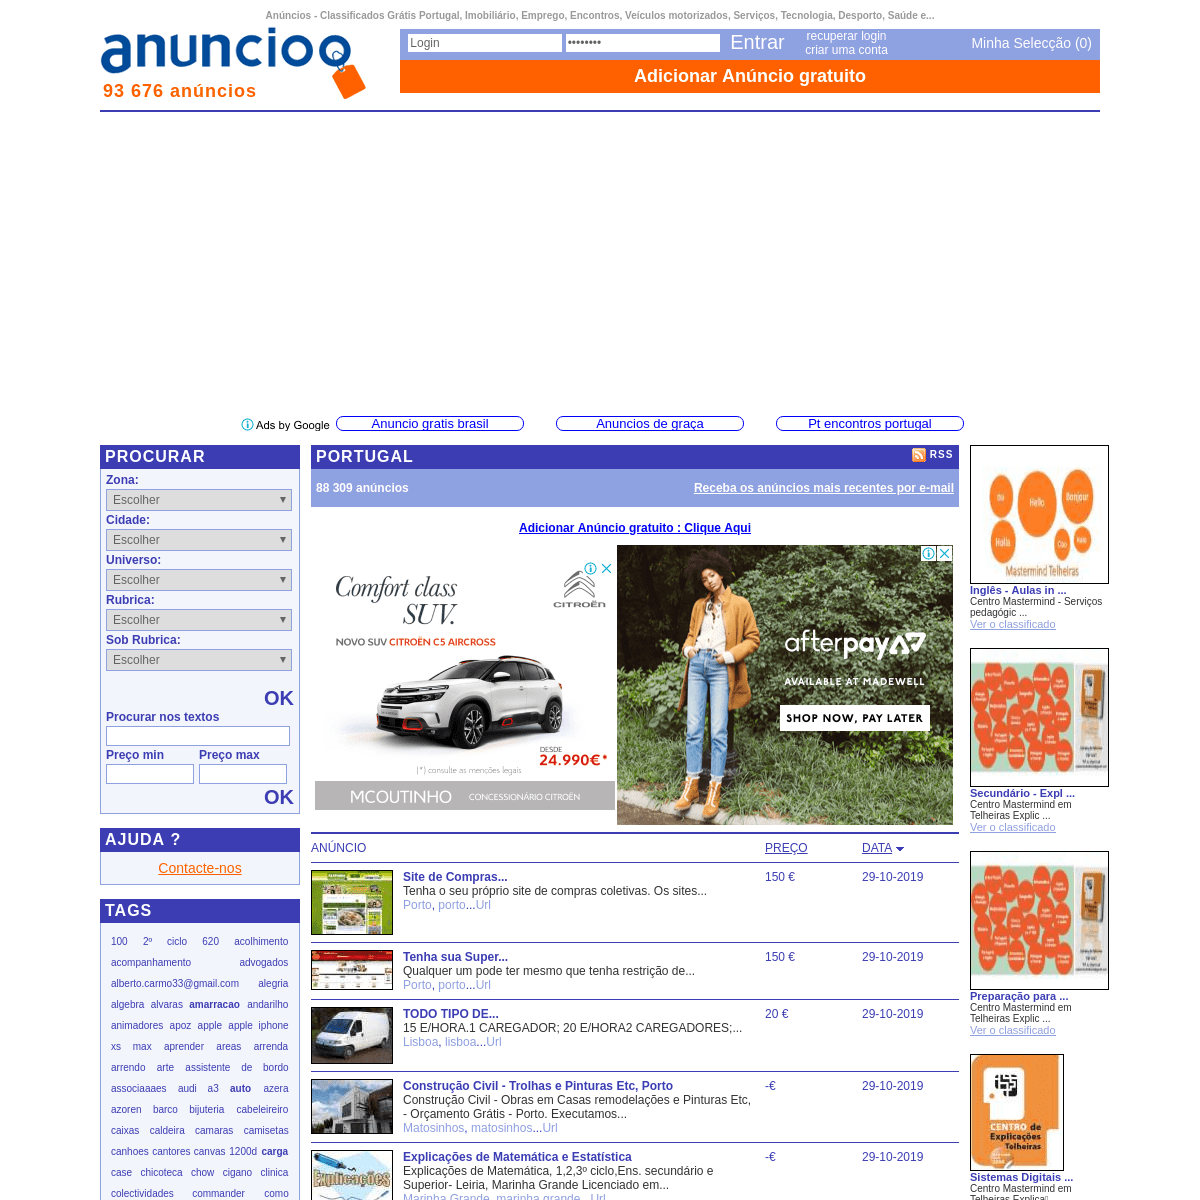 A complete backup of anuncioo.com